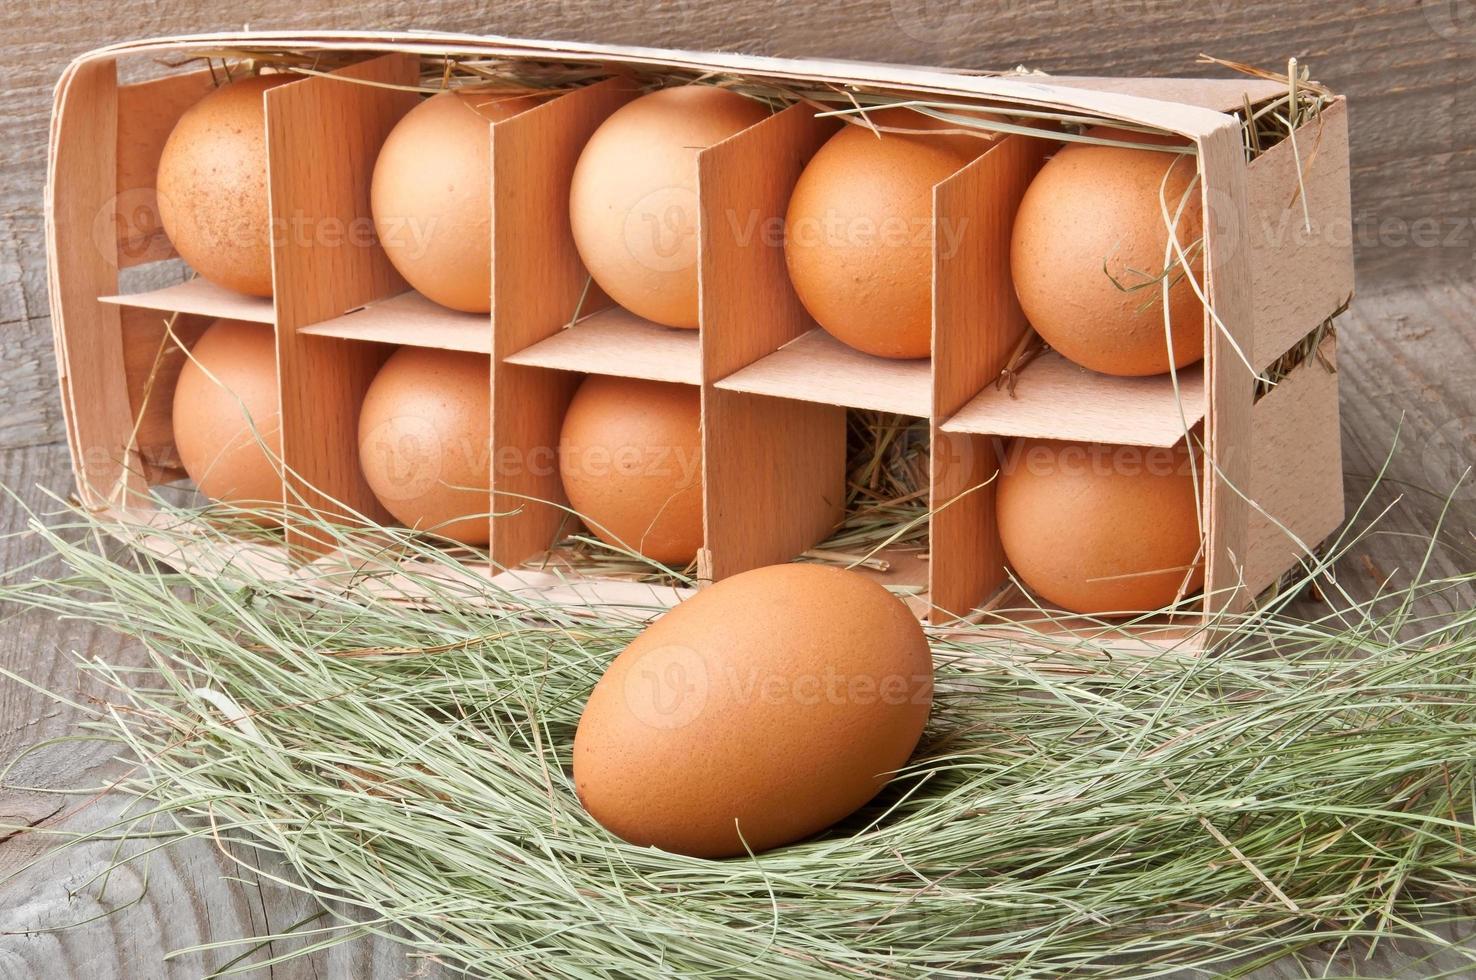 ovos em um recipiente de madeira foto